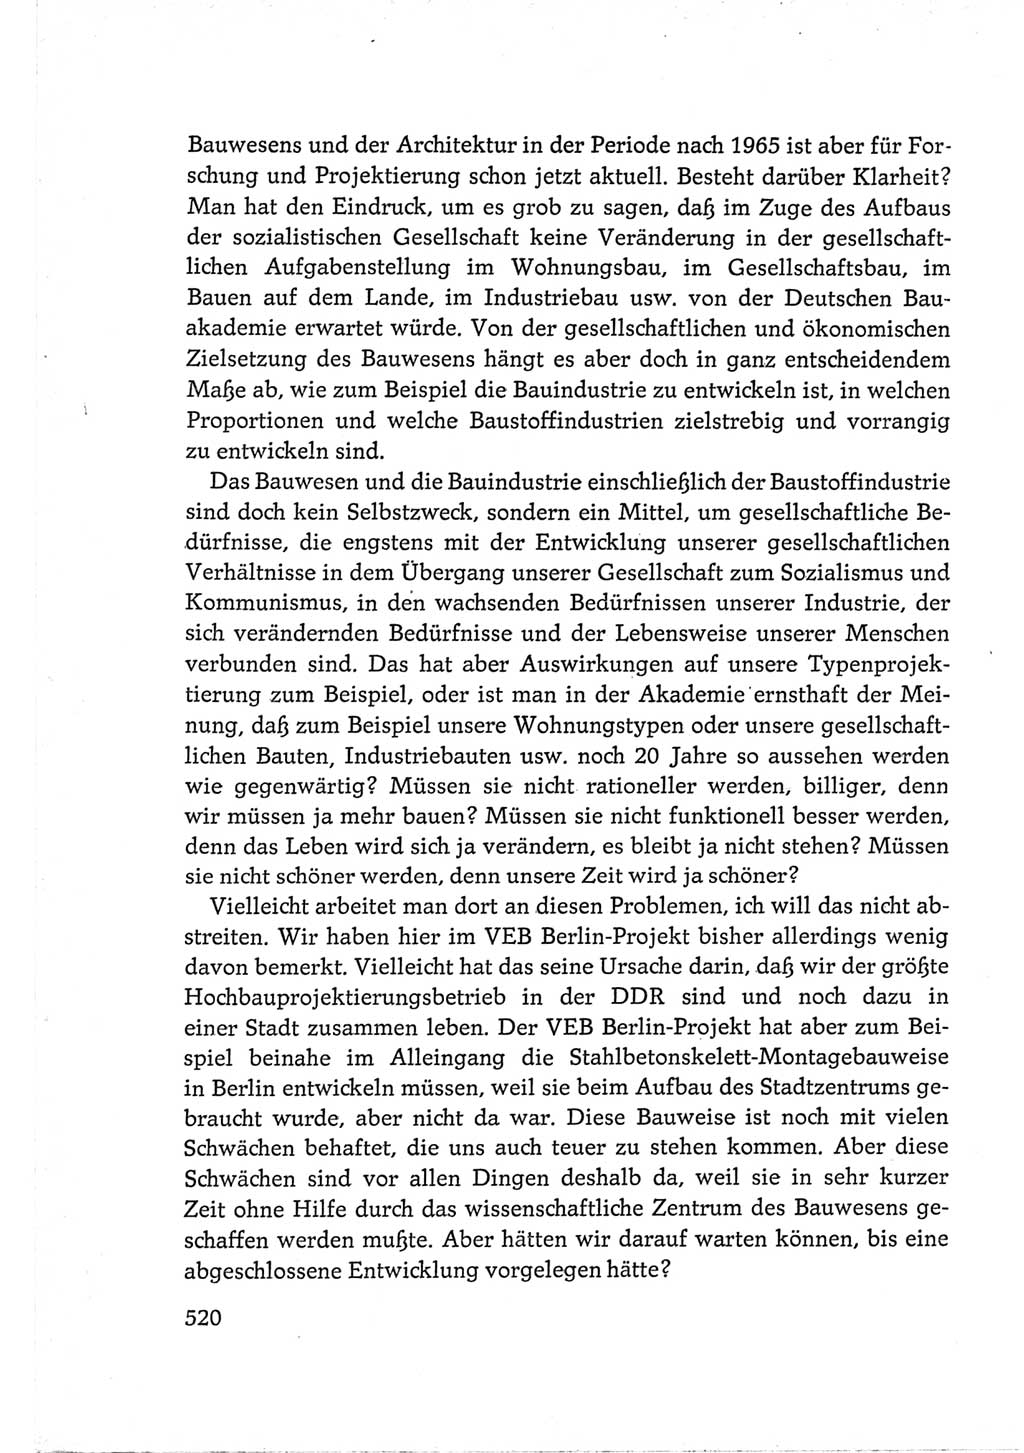 Protokoll der Verhandlungen des Ⅵ. Parteitages der Sozialistischen Einheitspartei Deutschlands (SED) [Deutsche Demokratische Republik (DDR)] 1963, Band Ⅲ, Seite 520 (Prot. Verh. Ⅵ. PT SED DDR 1963, Bd. Ⅲ, S. 520)